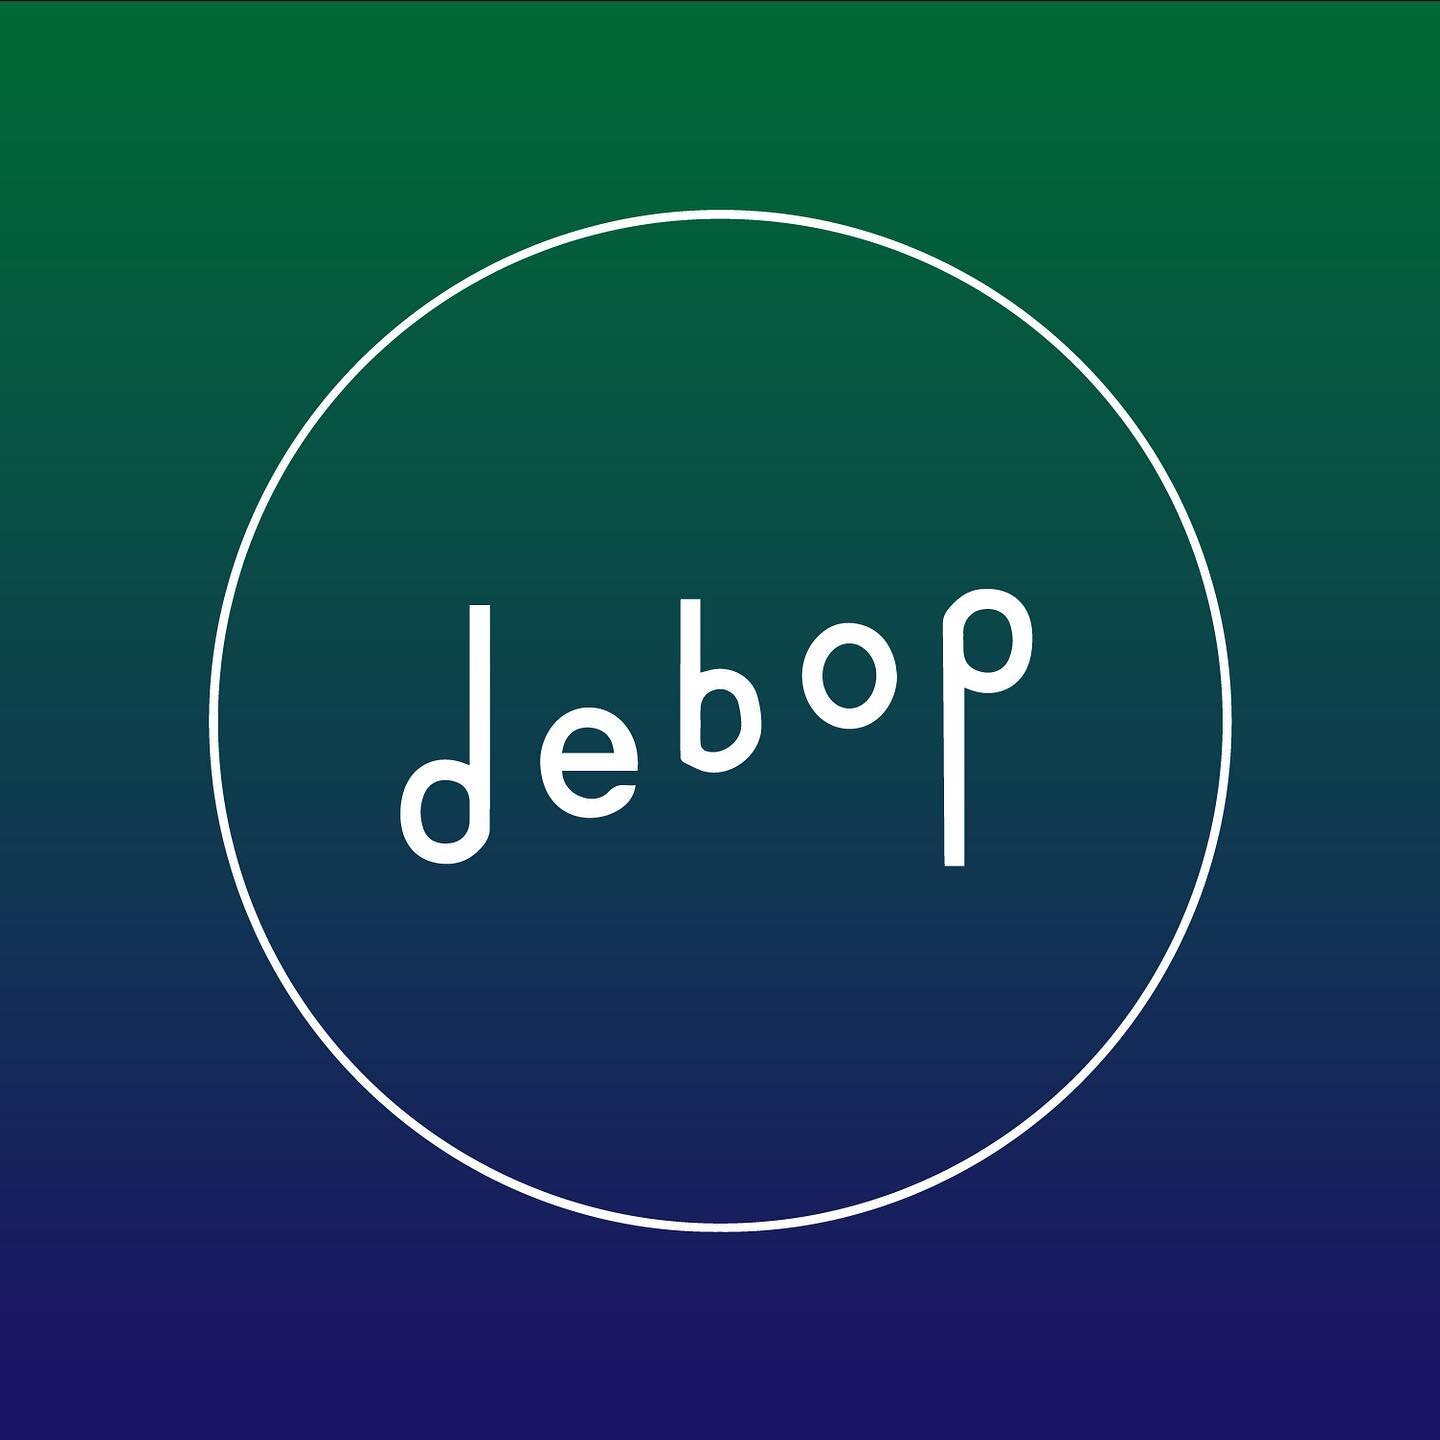 Debop 2.0 // coming soon

design: @sunqueendesigns &amp; @jgdebray 
logo: @juliaskuo
website: @deedoersch